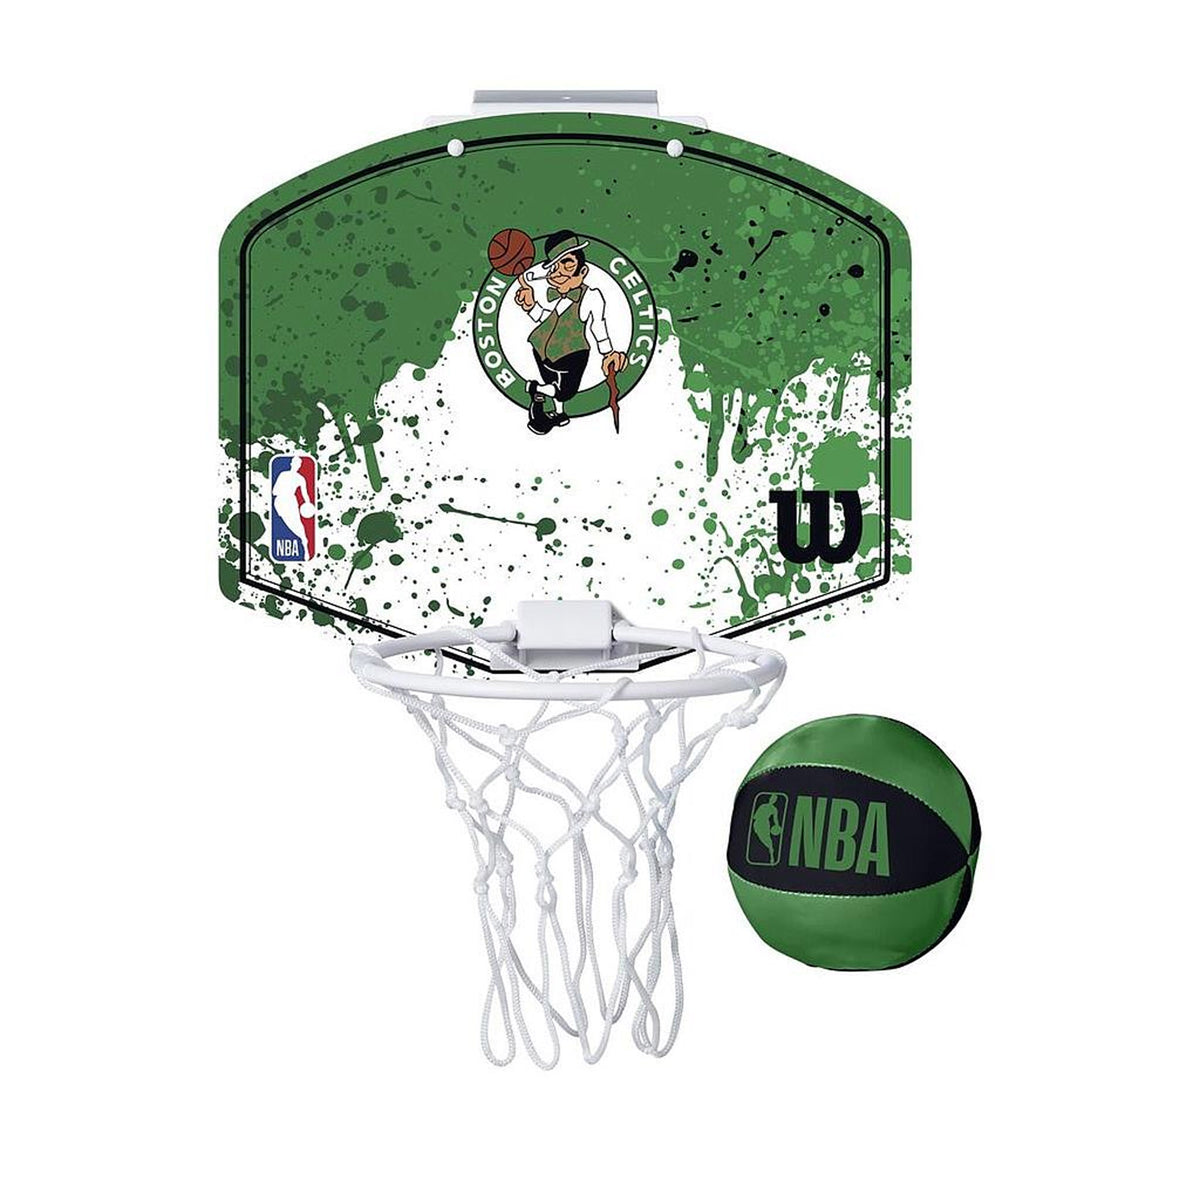 Wilson NBA Team Mini Hoop - Boston Celtics